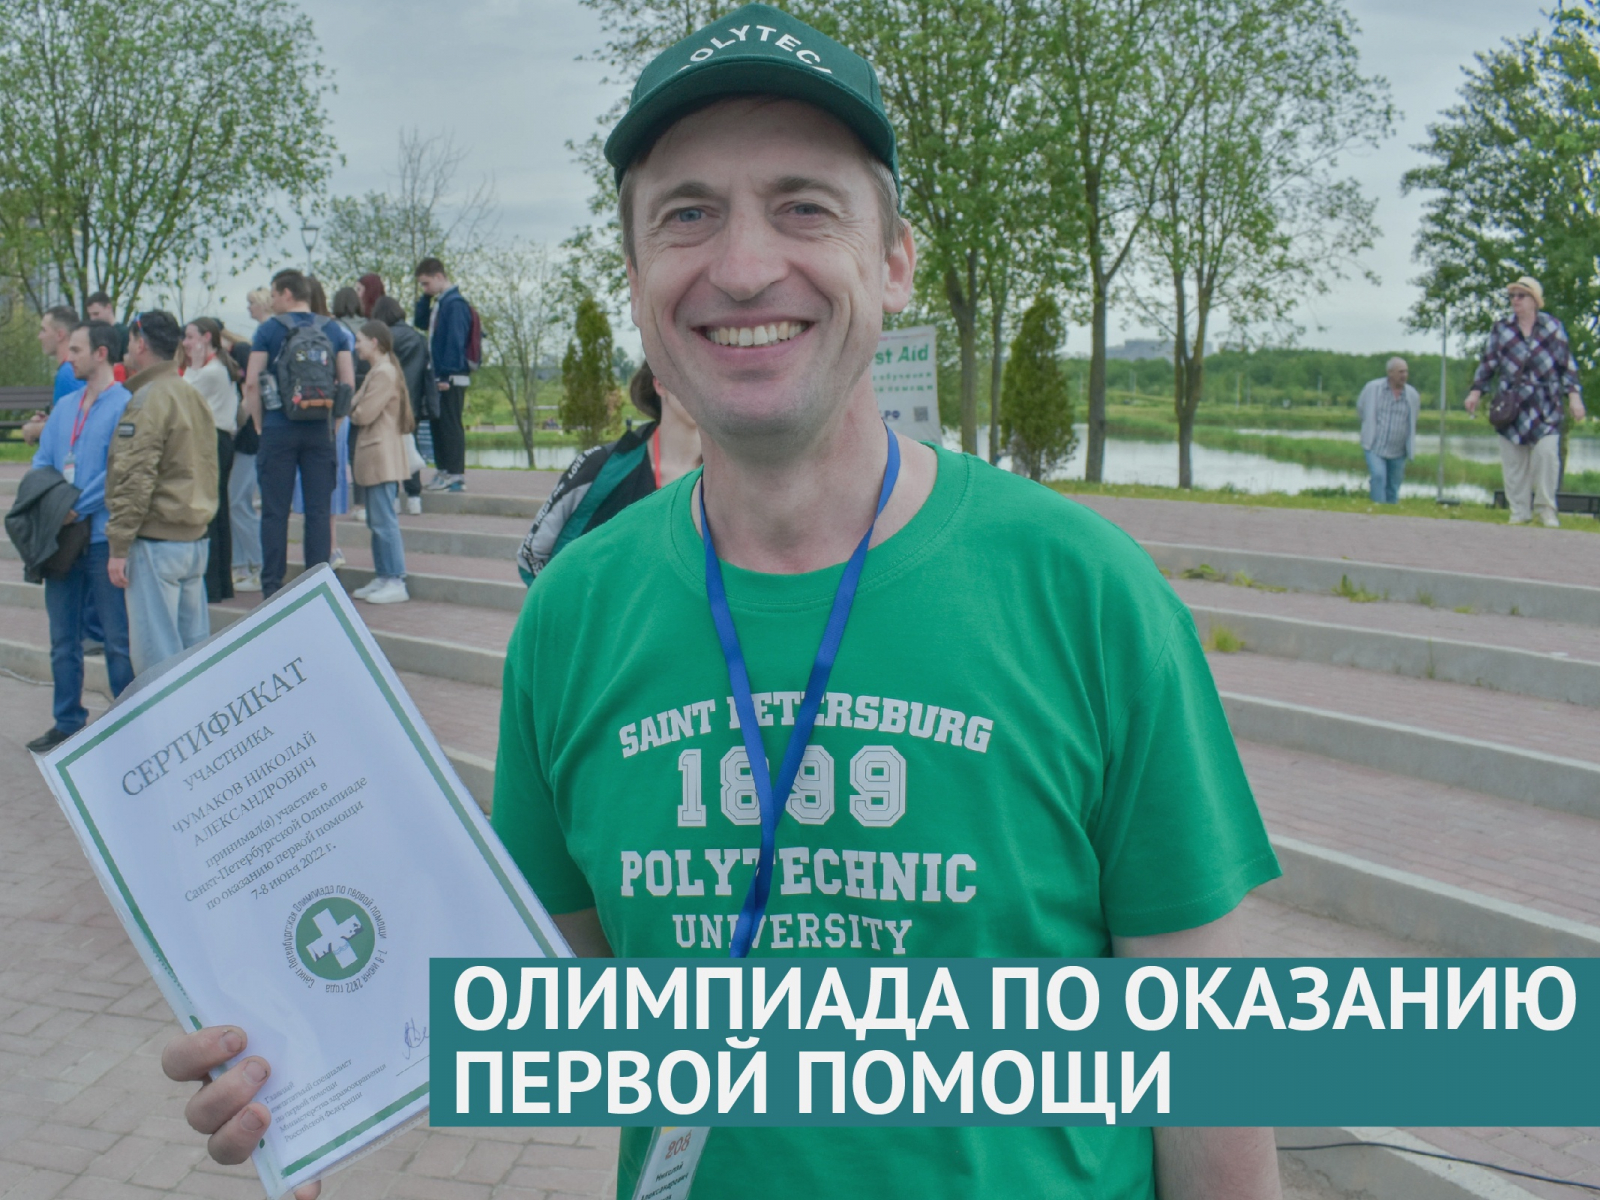 Санкт-Петербургская олимпиада по оказанию первой помощи